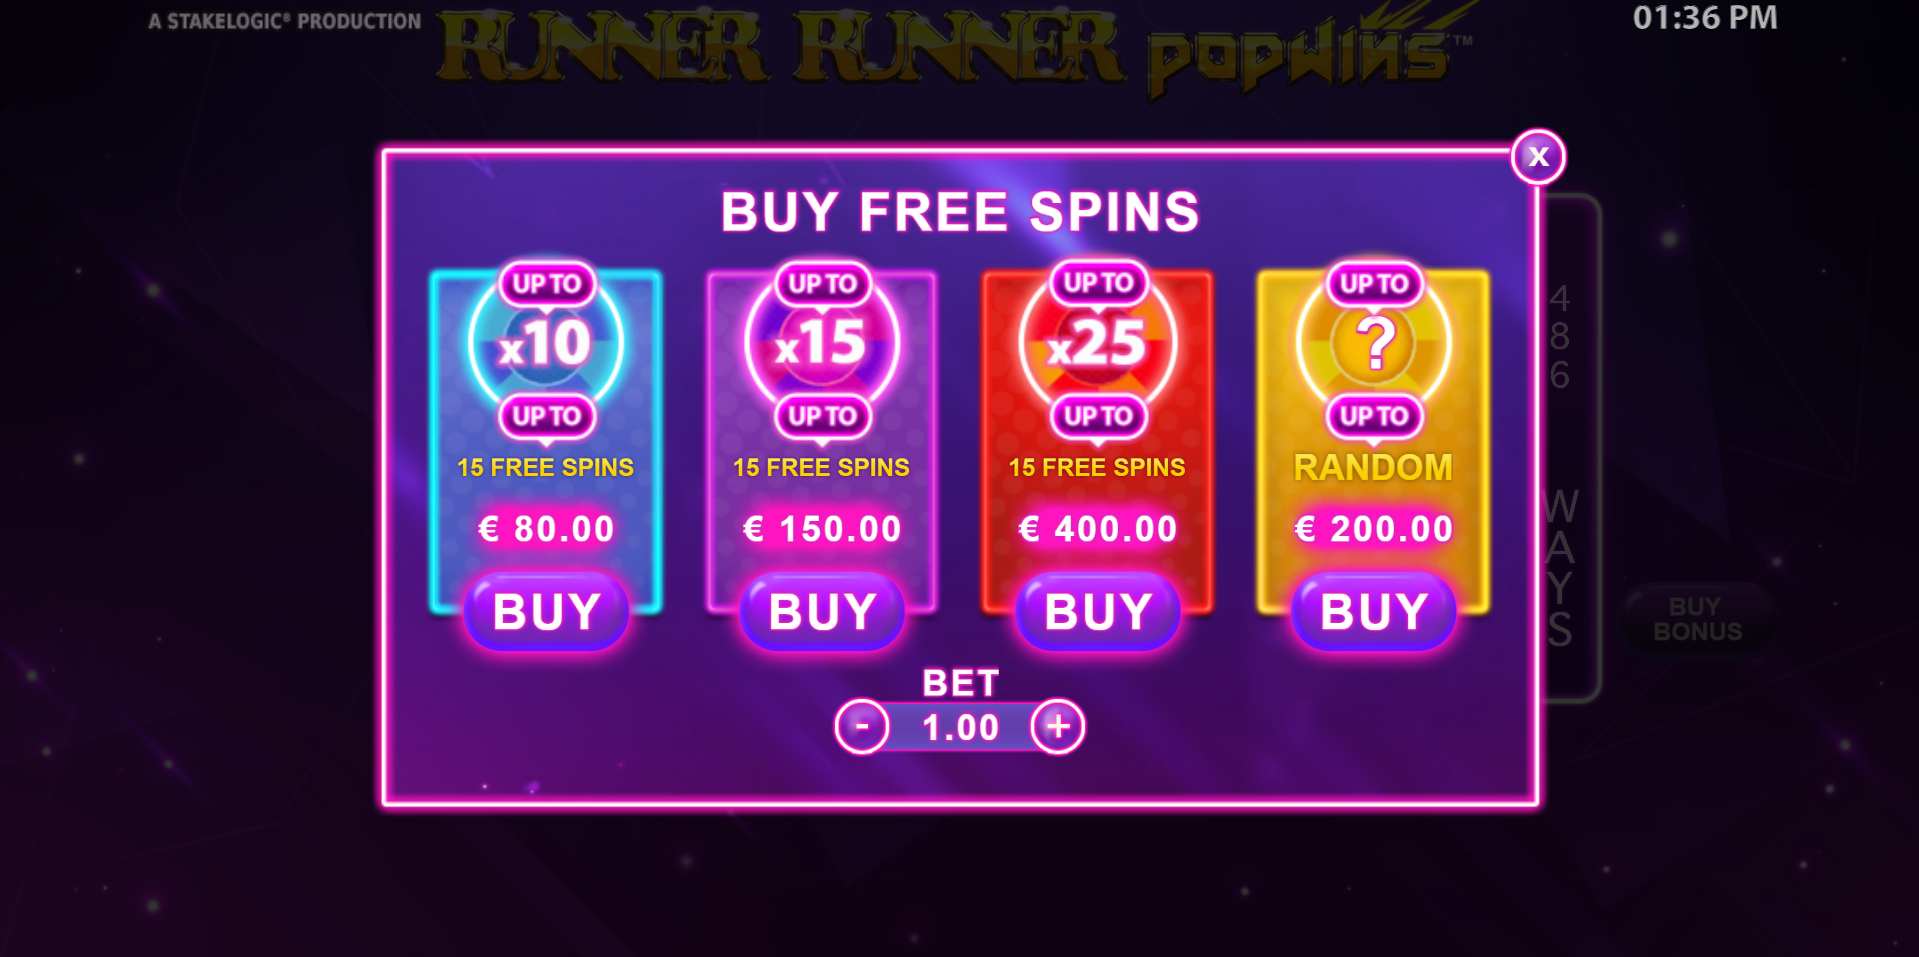 Runner Runner PopWins Bonus Buy Options